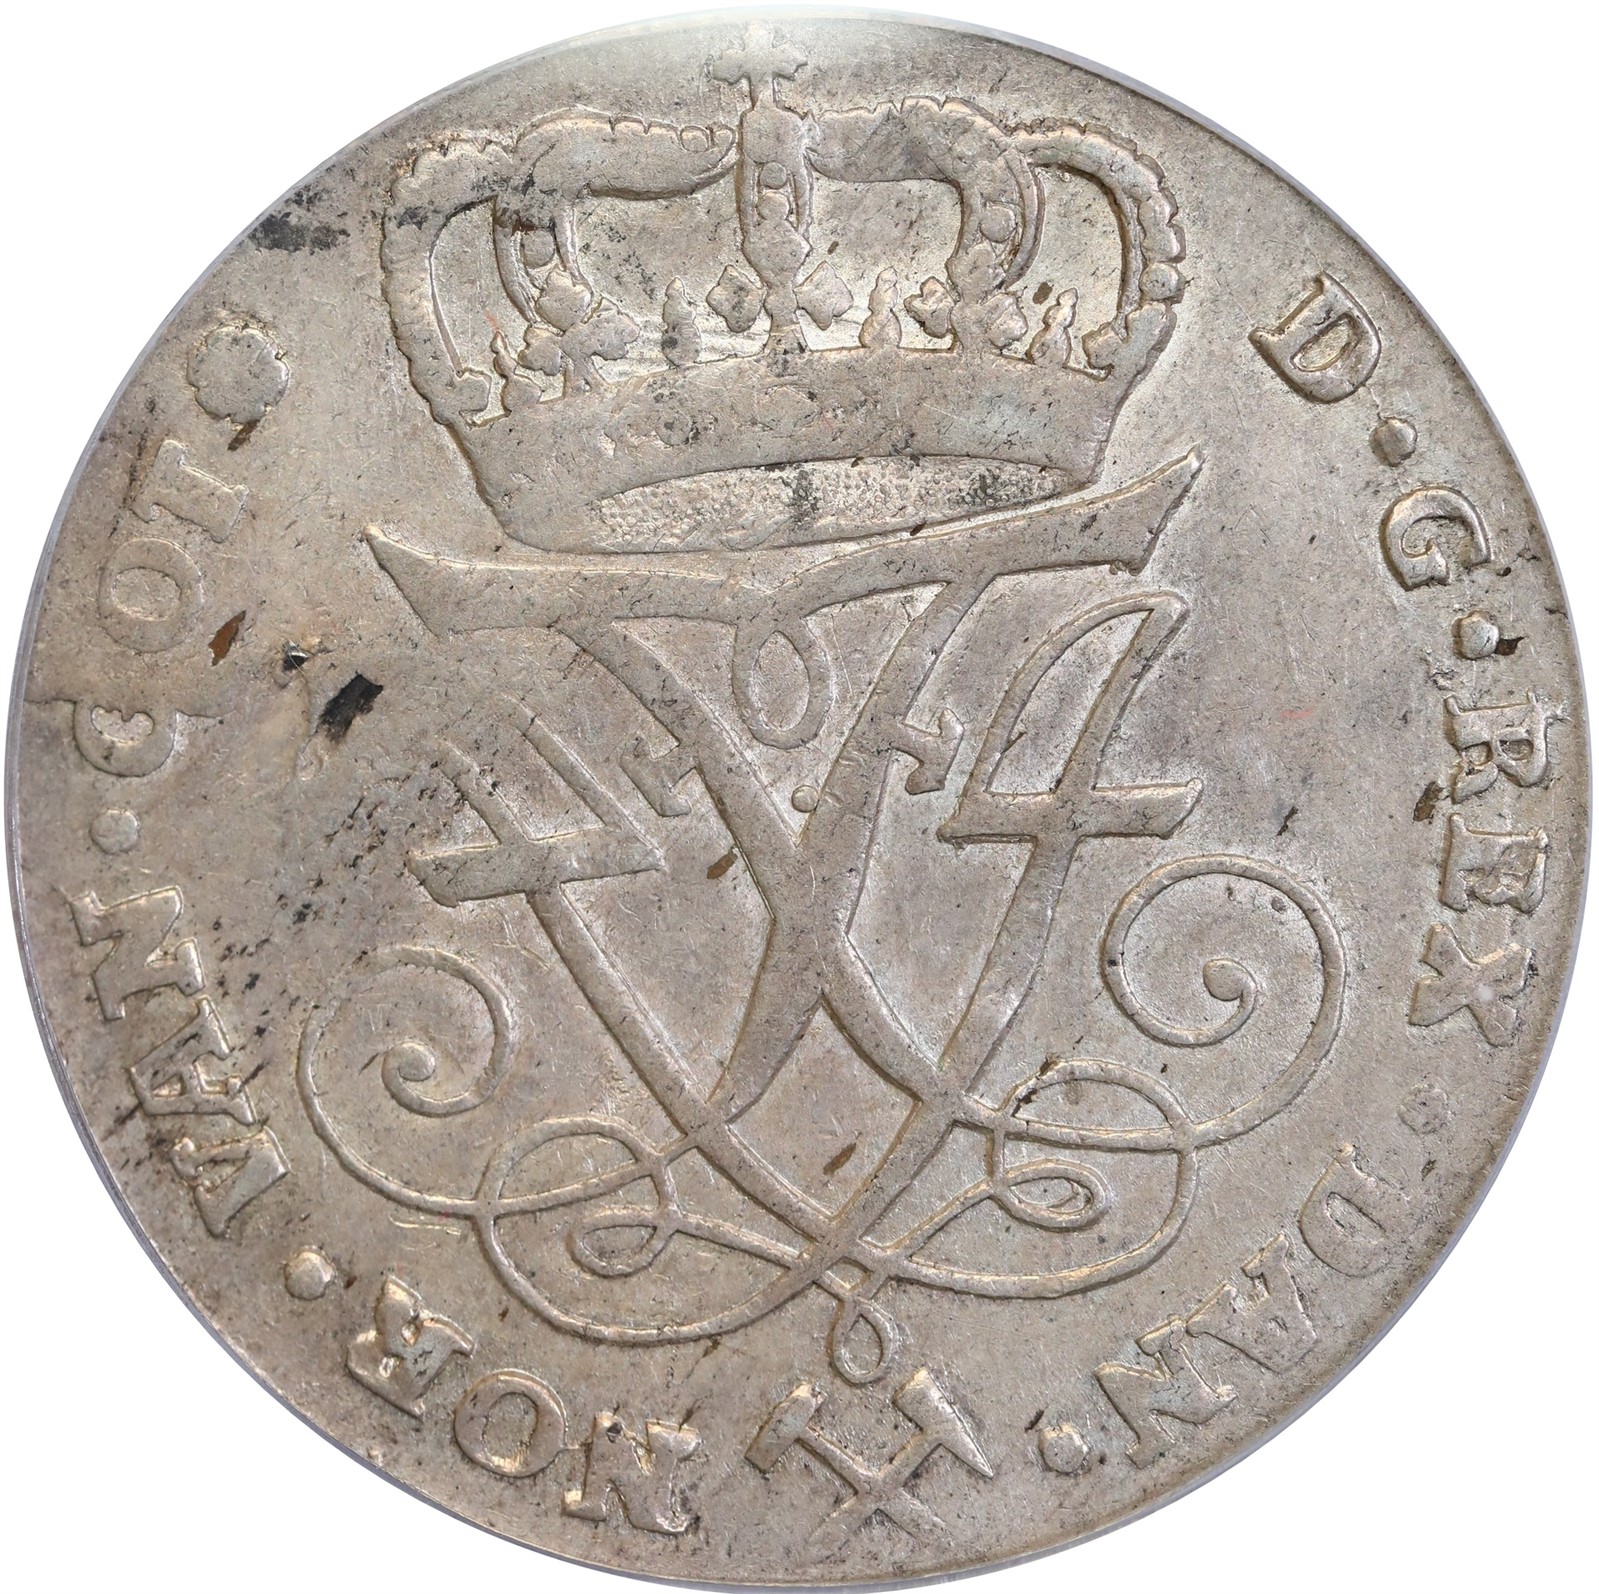 NORWAY. Frederik IV. 4 Mark (Krone) 1726 PCGS AU55.